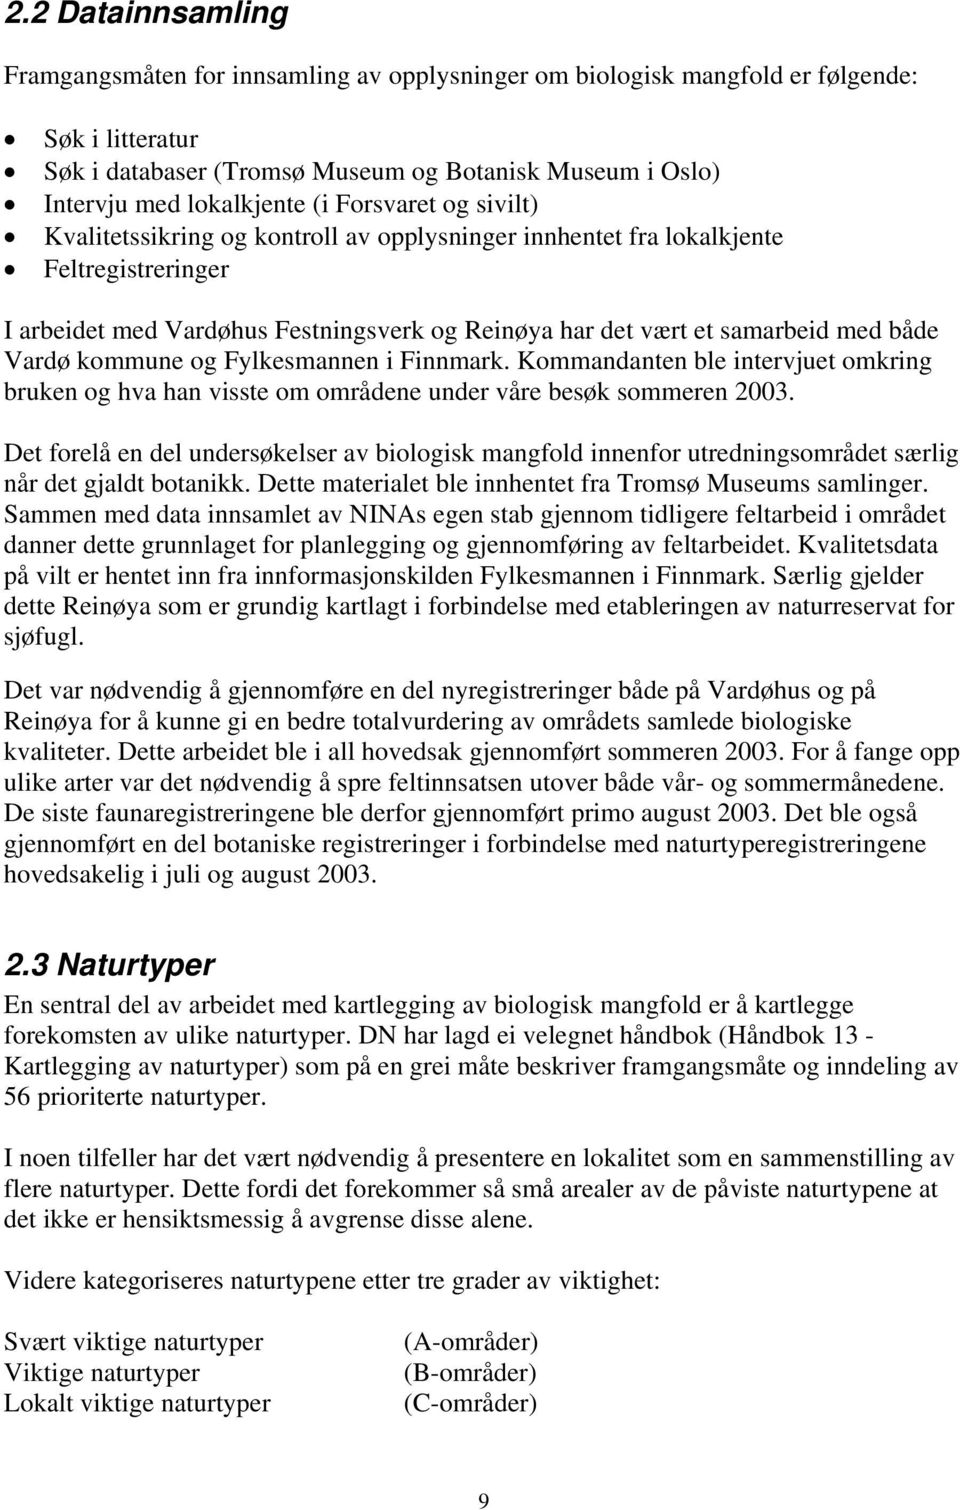 Vardø kommune og Fylkesmannen i Finnmark. Kommandanten ble intervjuet omkring bruken og hva han visste om områdene under våre besøk sommeren 2003.